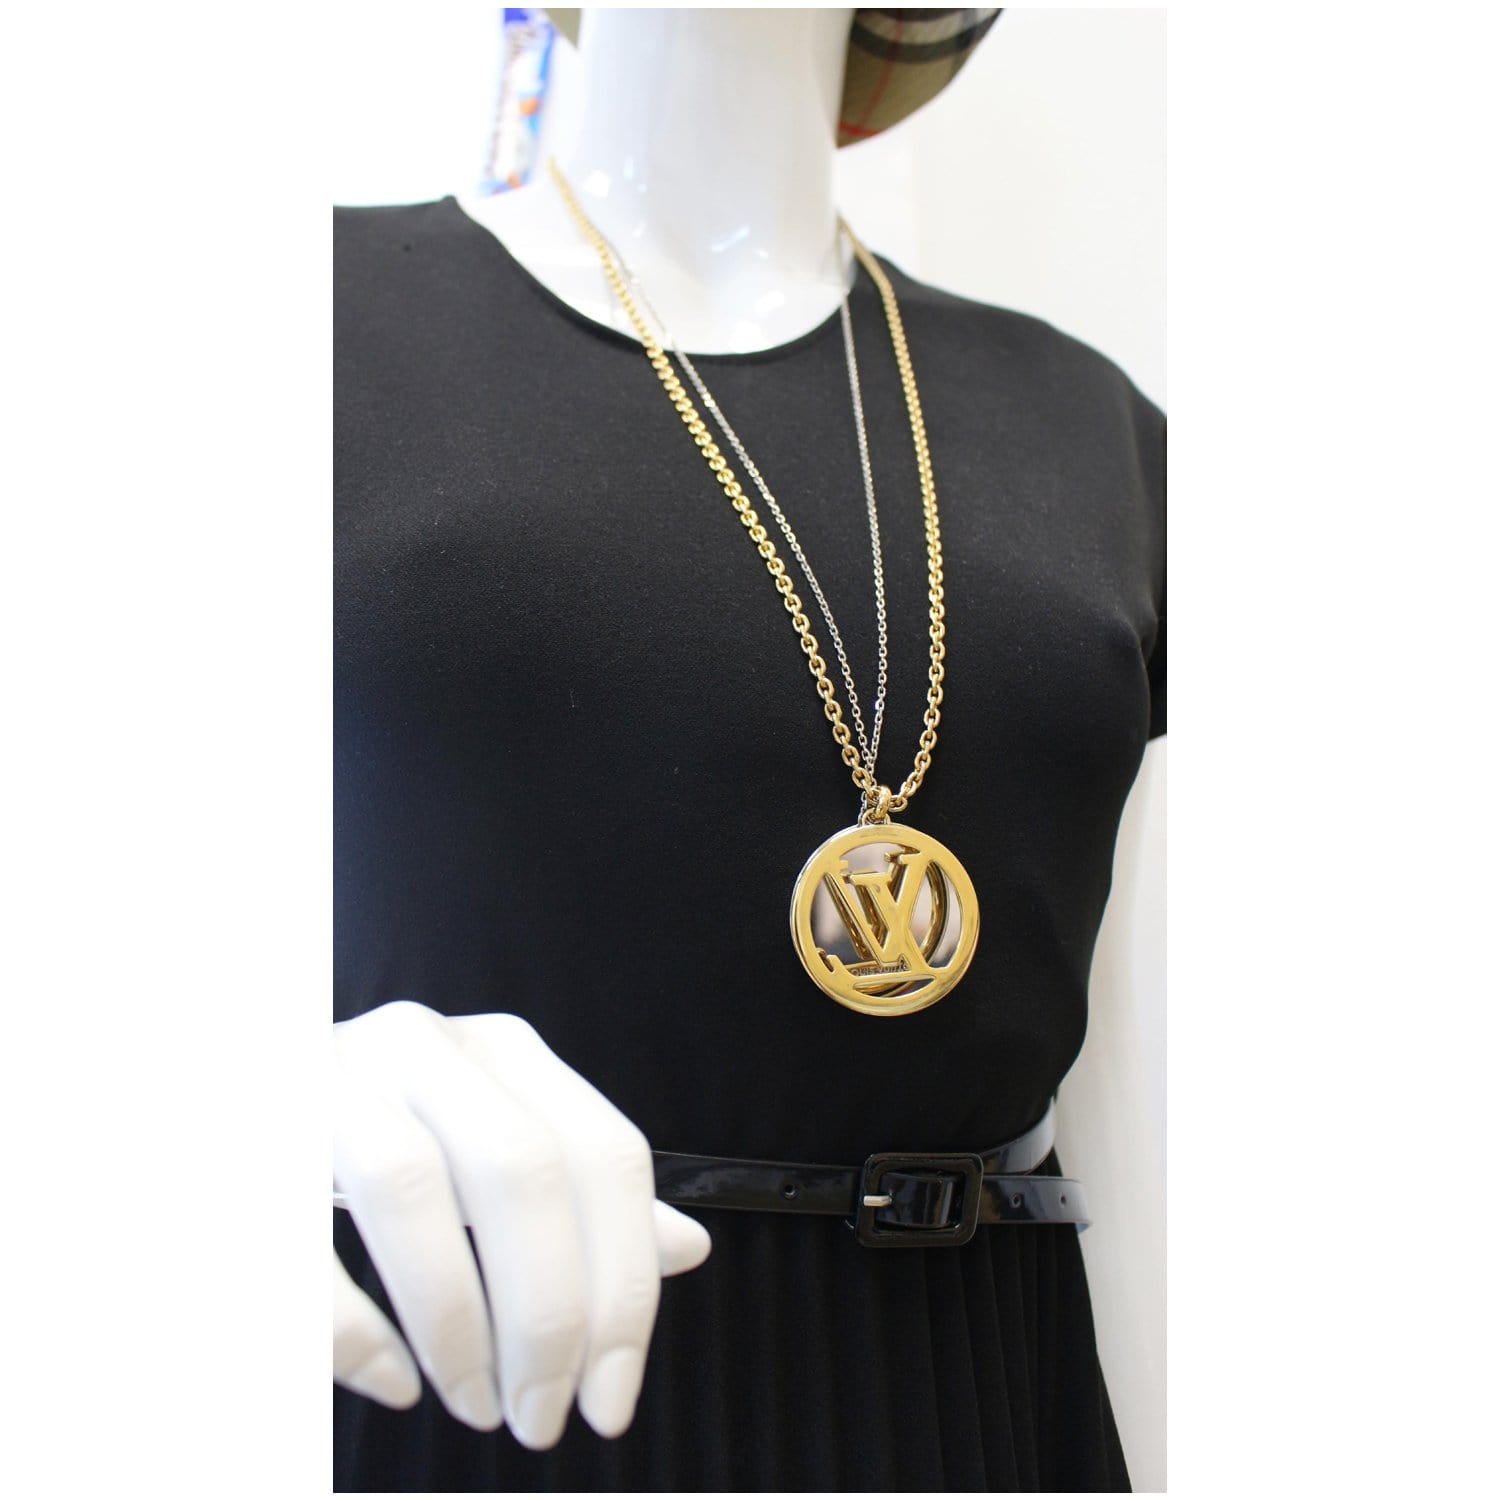 Louis Vuitton pendant gold bracelet